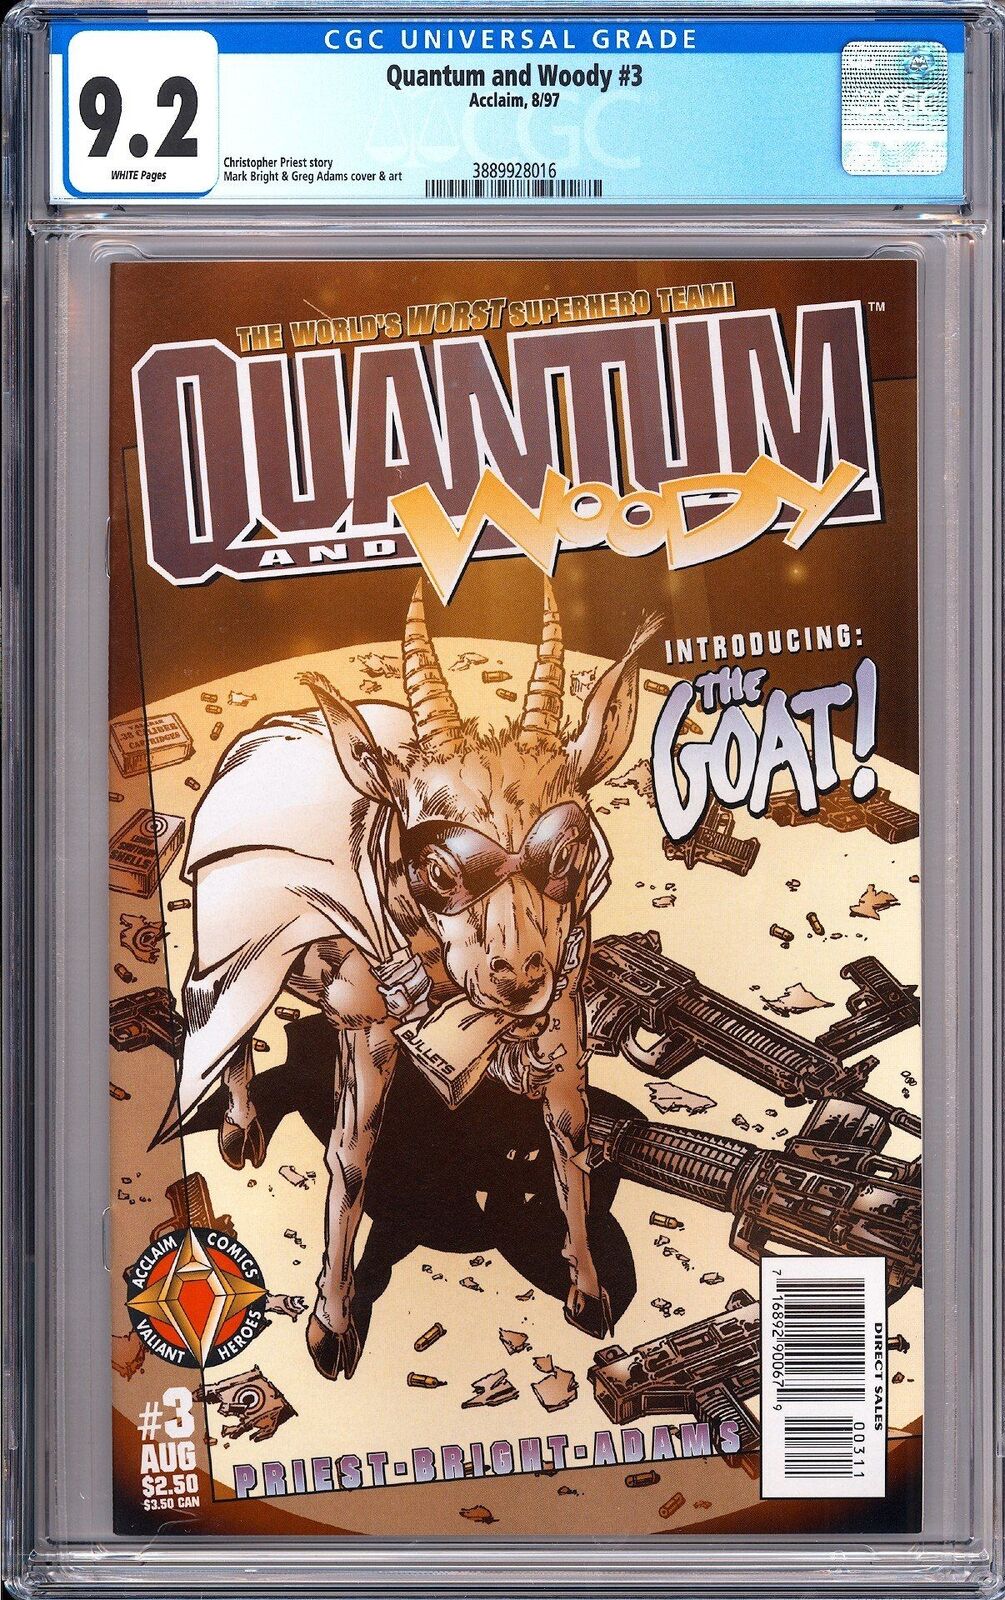 Quantum & Woody 3 CGC 9.2 1997 3889928016 1st App. of the Goat Acclaim